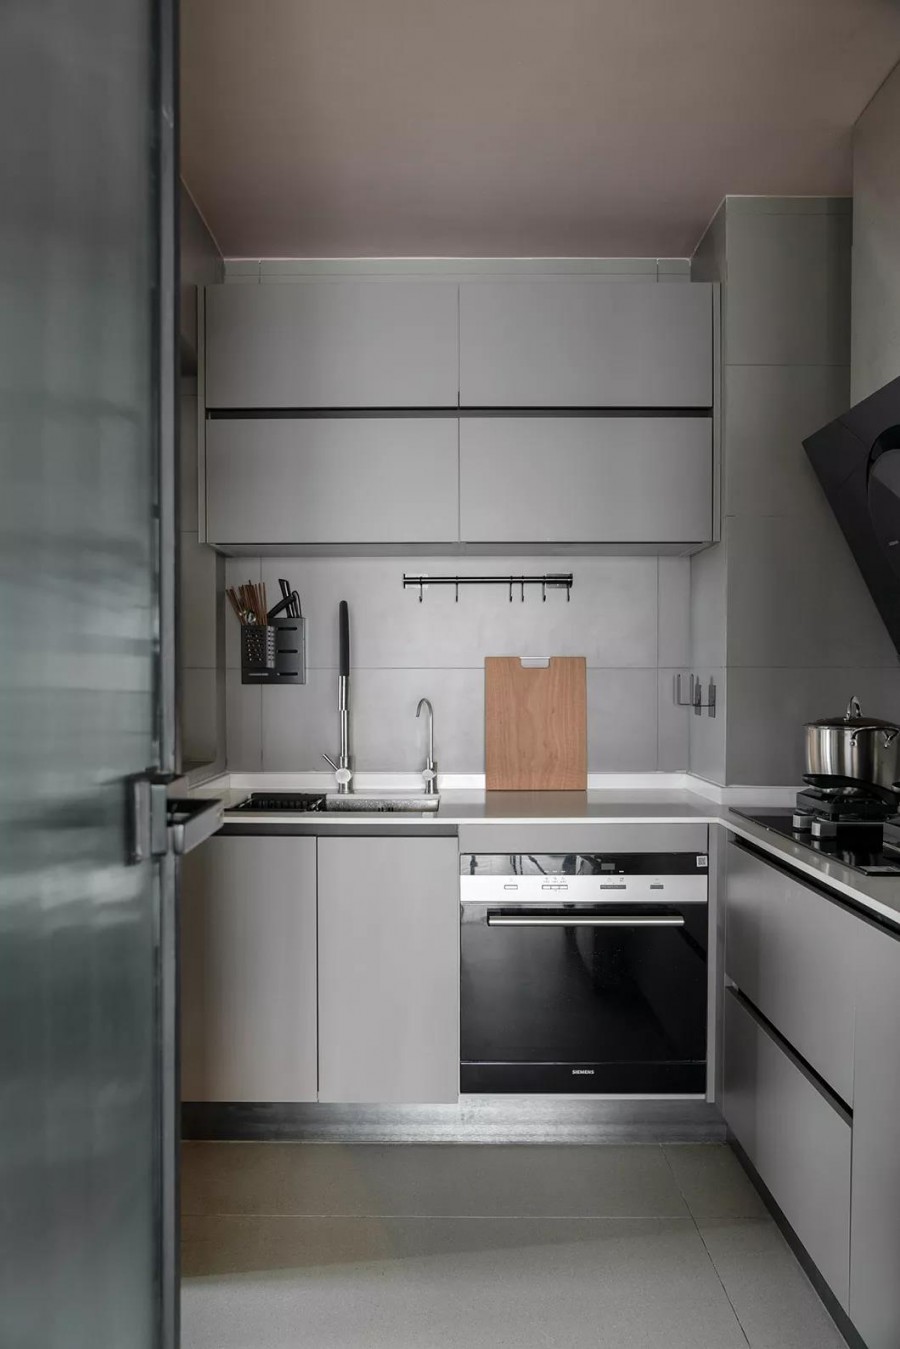 现代简约风格三居室厨房装修效果图